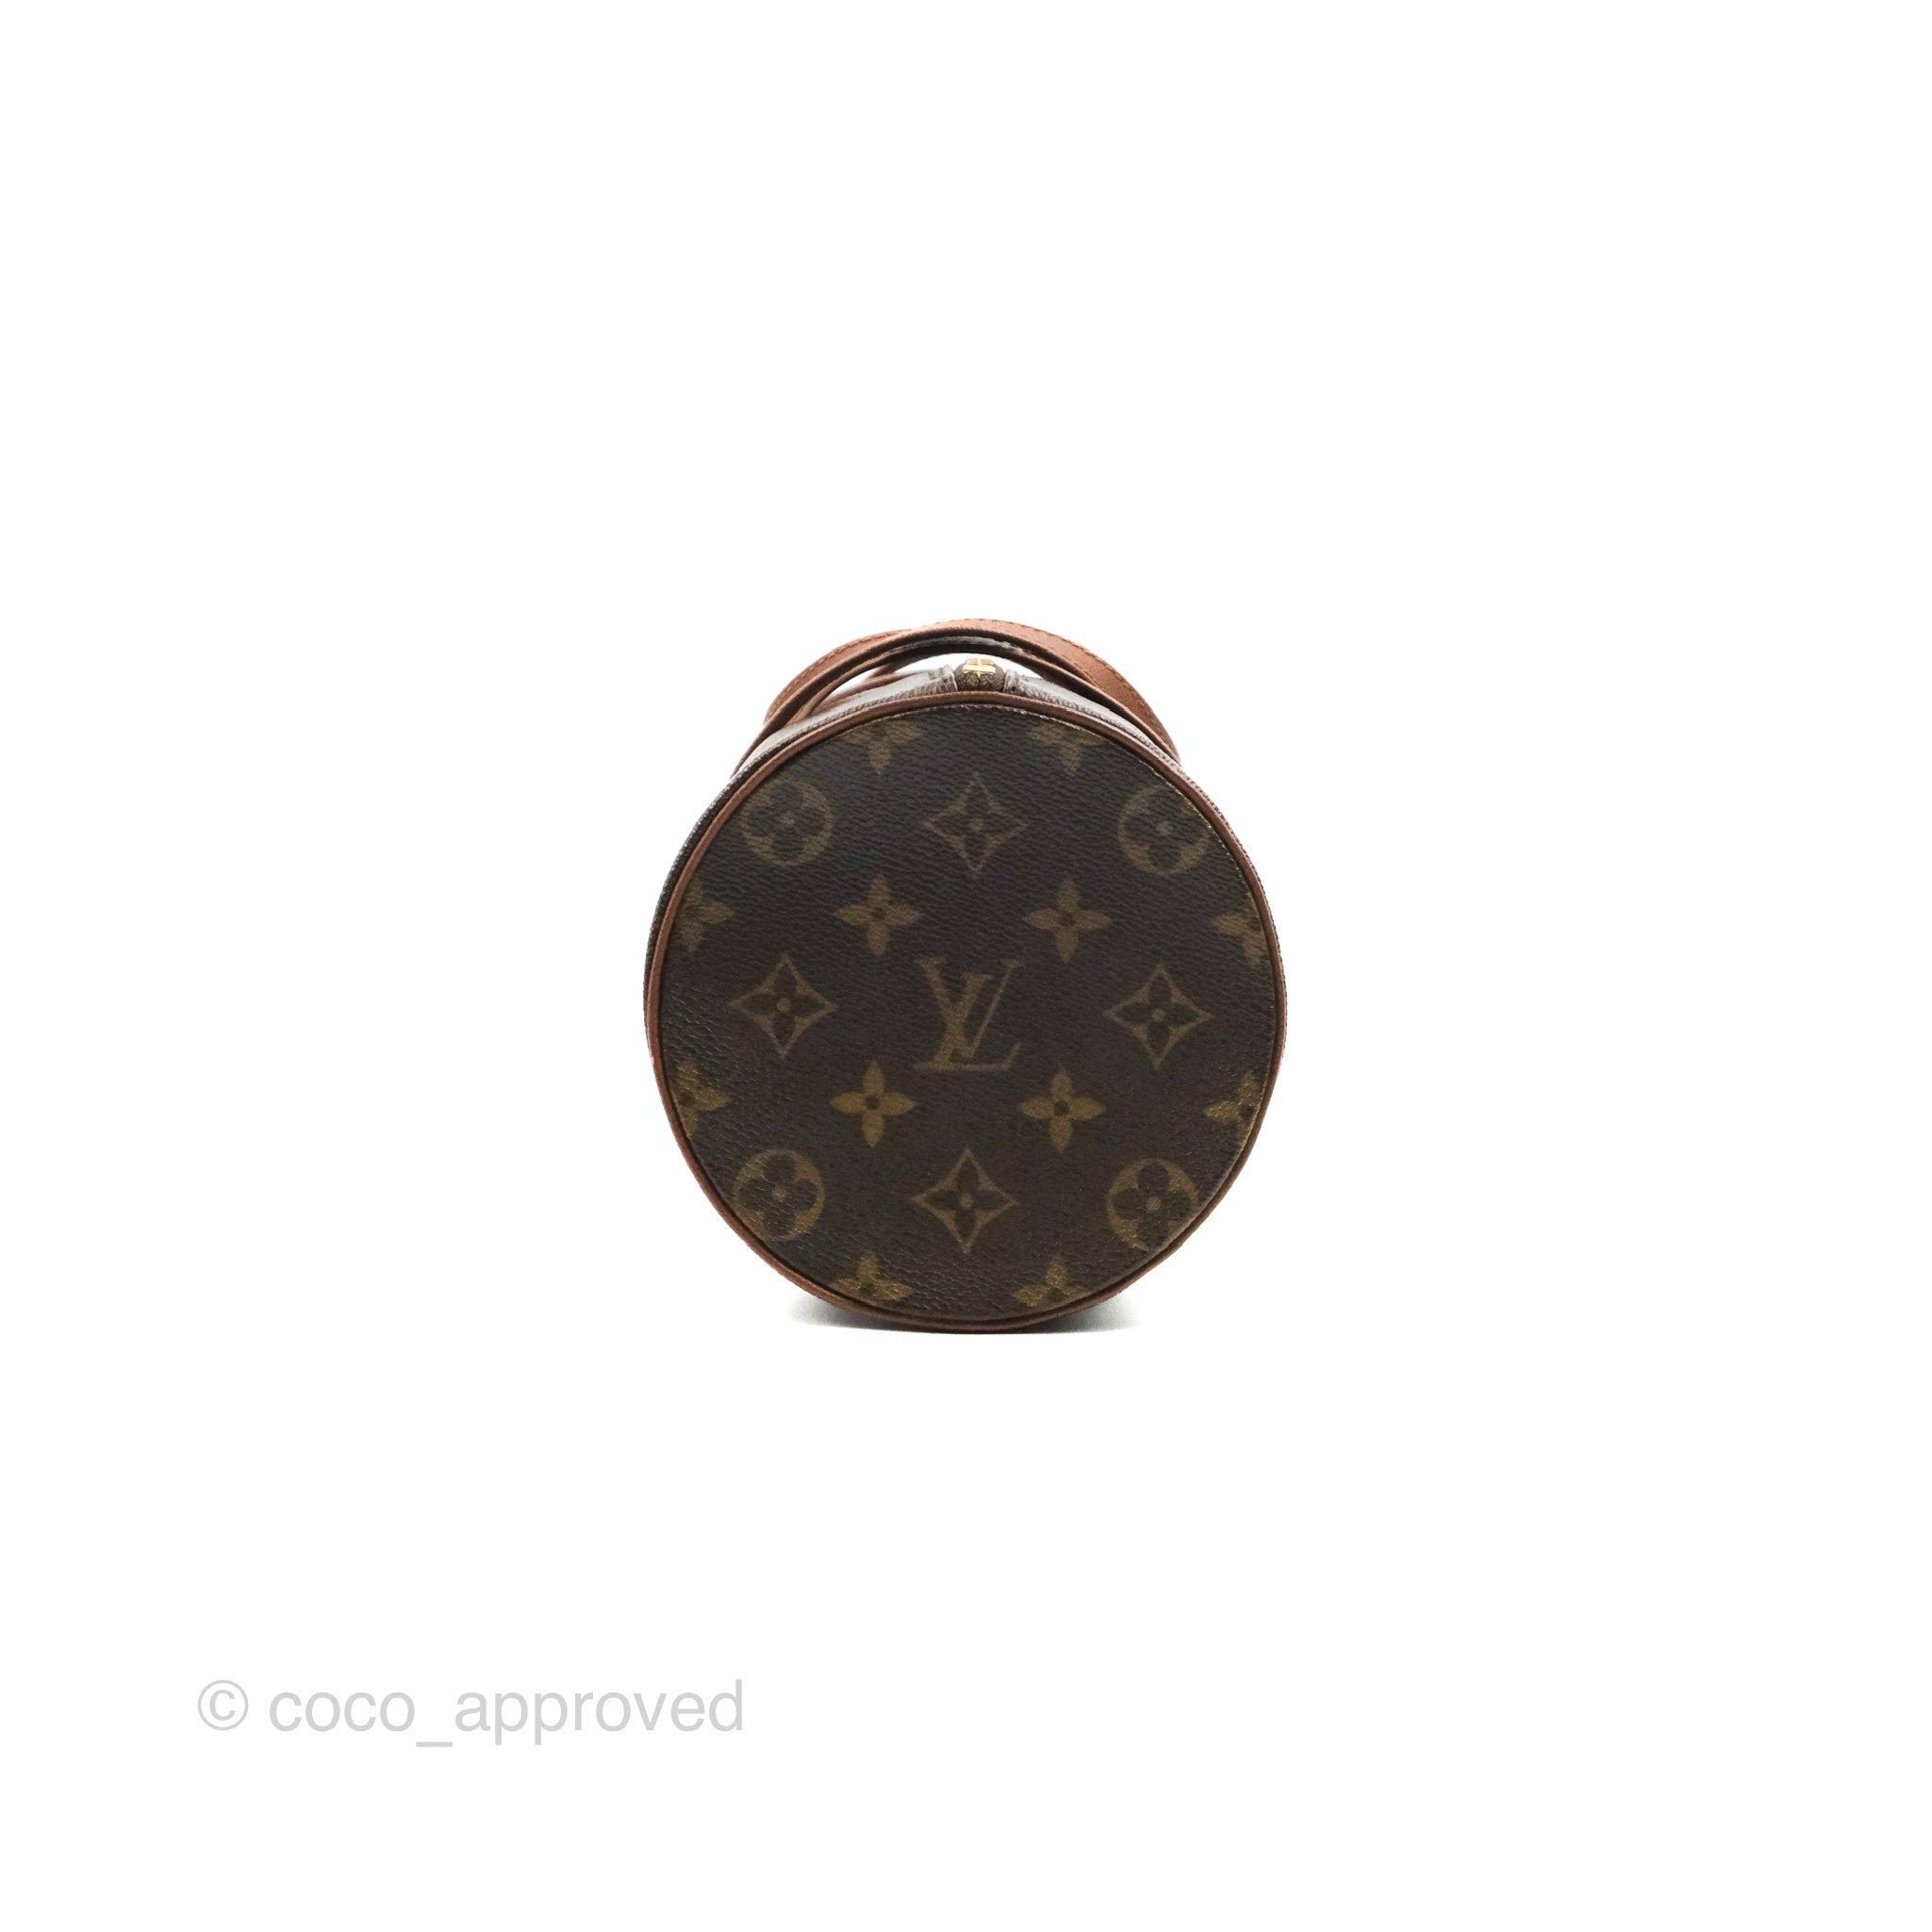 Louis Vuitton Monogram Papillon 26 Bag 22lvs1231 – Bagriculture